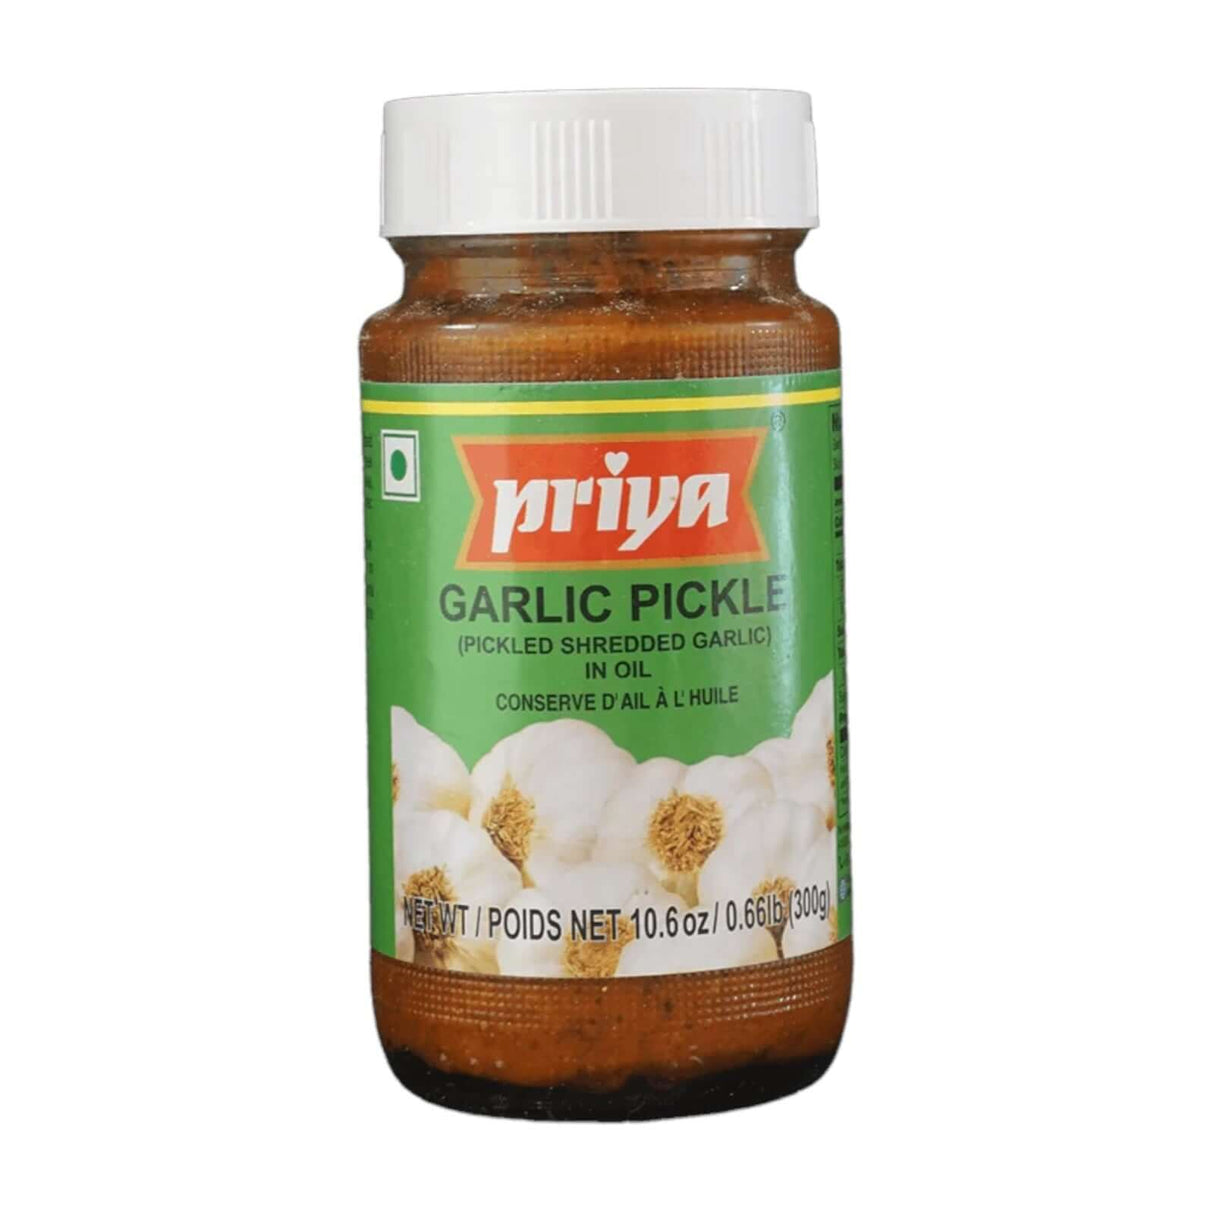 Priya Garlic Pickle in Oil